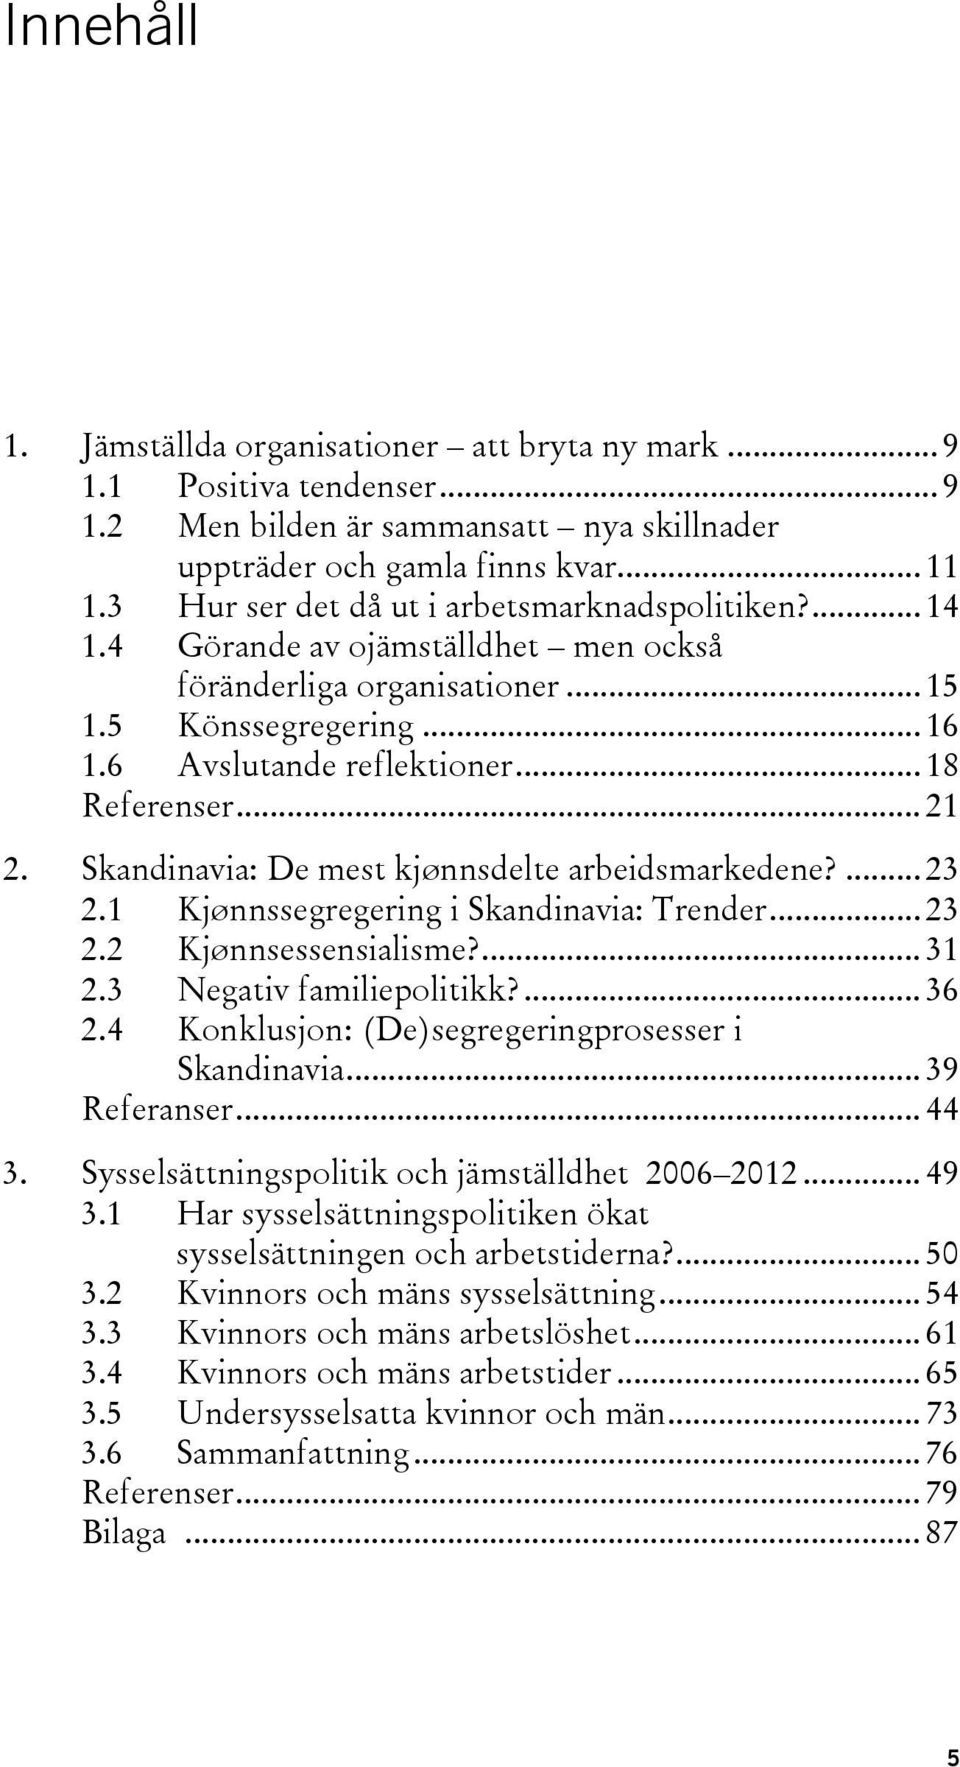 .. 21 2. Skandinavia: De mest kjønnsdelte arbeidsmarkedene?... 23 2.1 Kjønnssegregering i Skandinavia: Trender... 23 2.2 Kjønnsessensialisme?... 31 2.3 Negativ familiepolitikk?... 36 2.